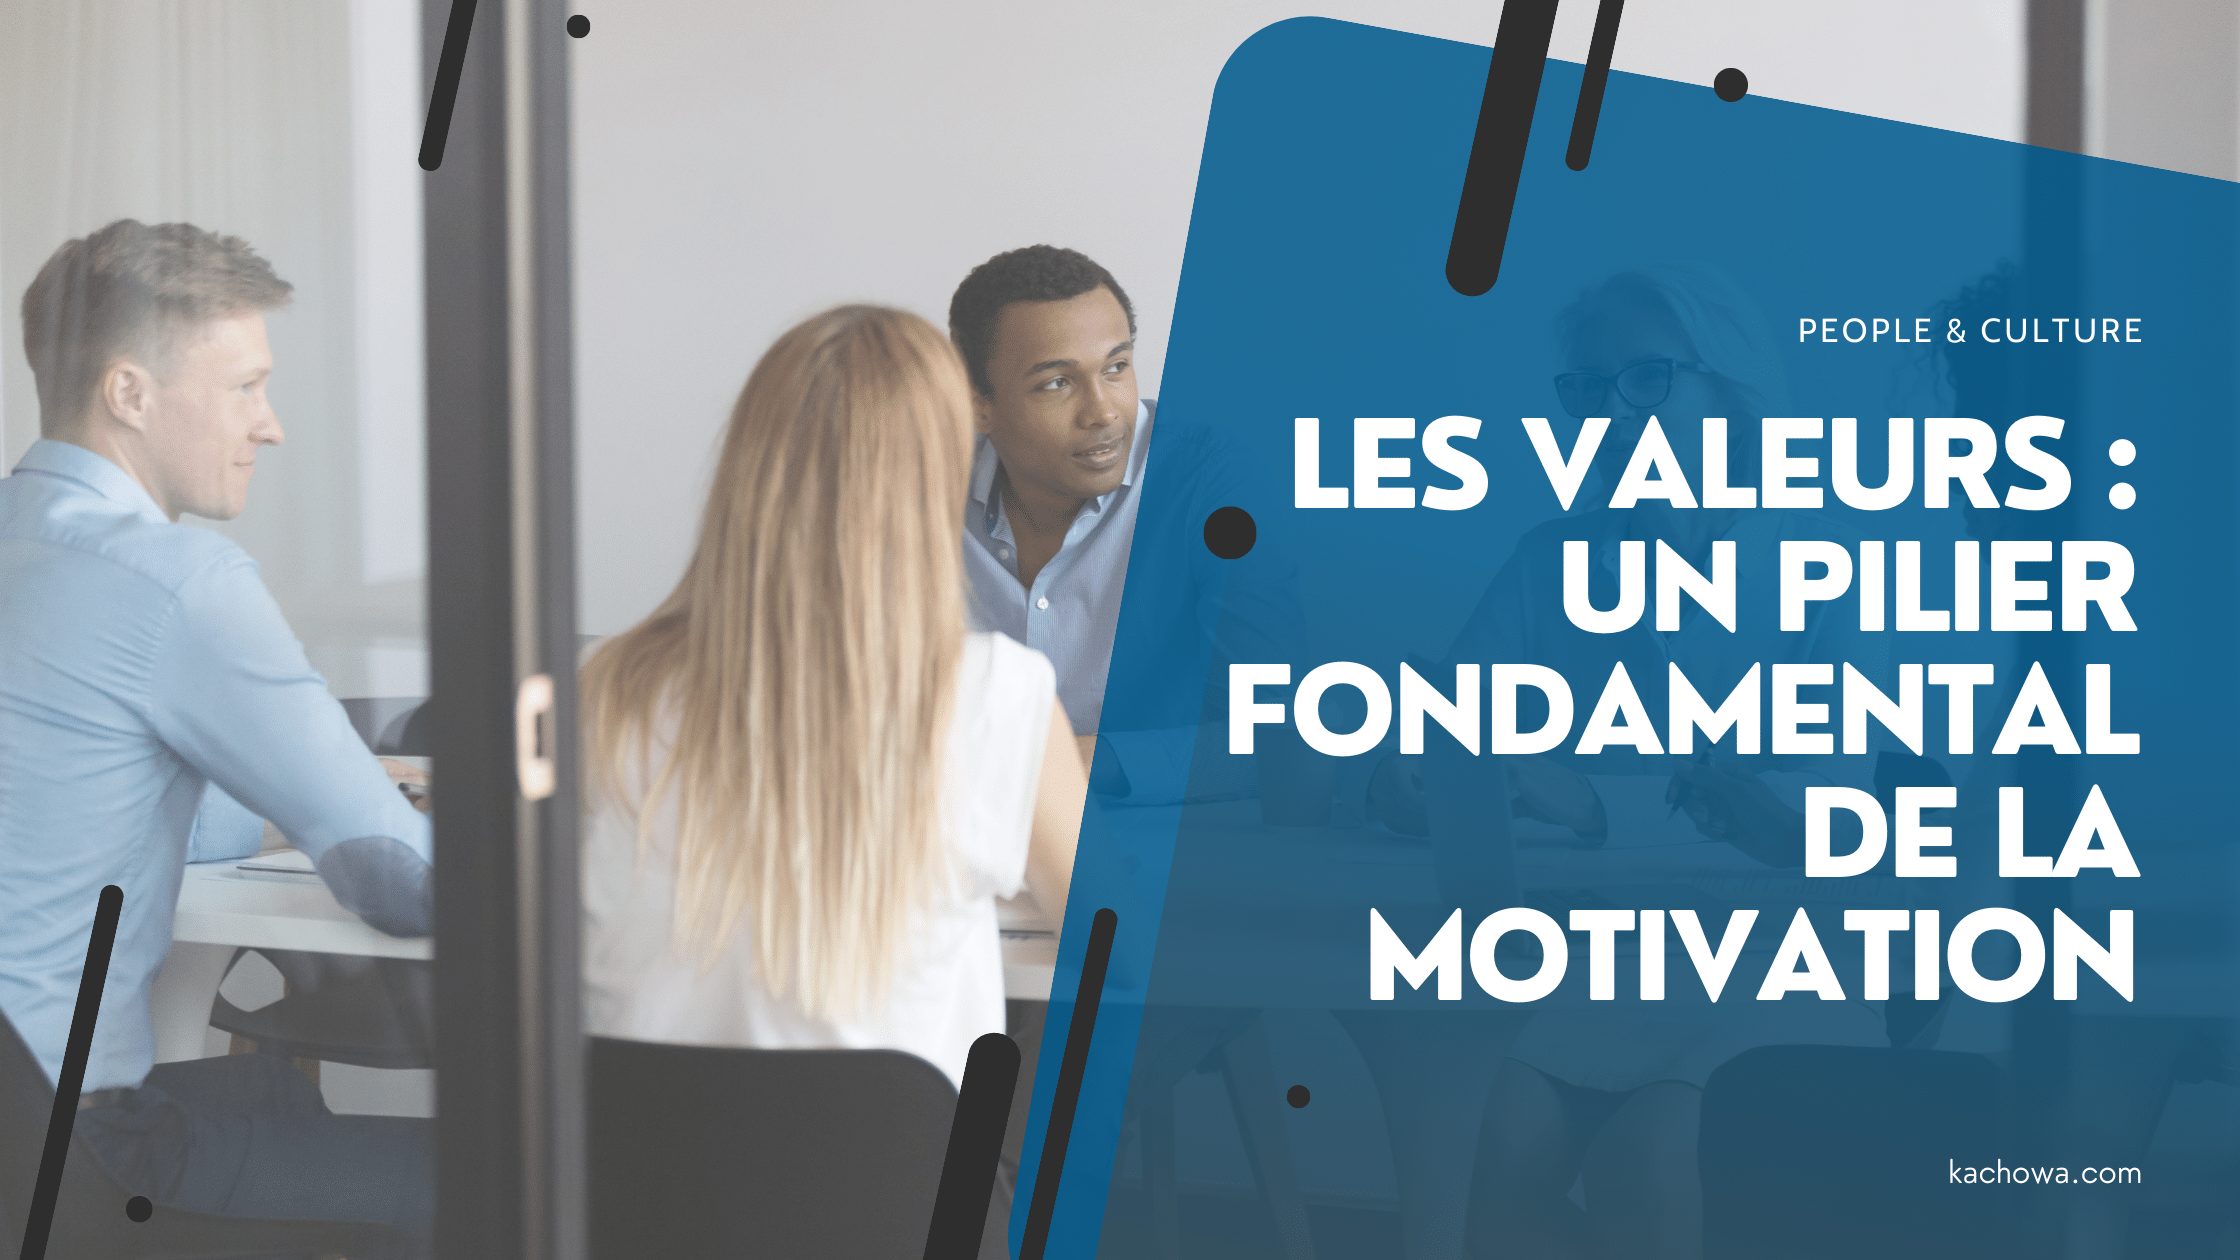 Les valeurs, un pilier fondamental de la motivation.